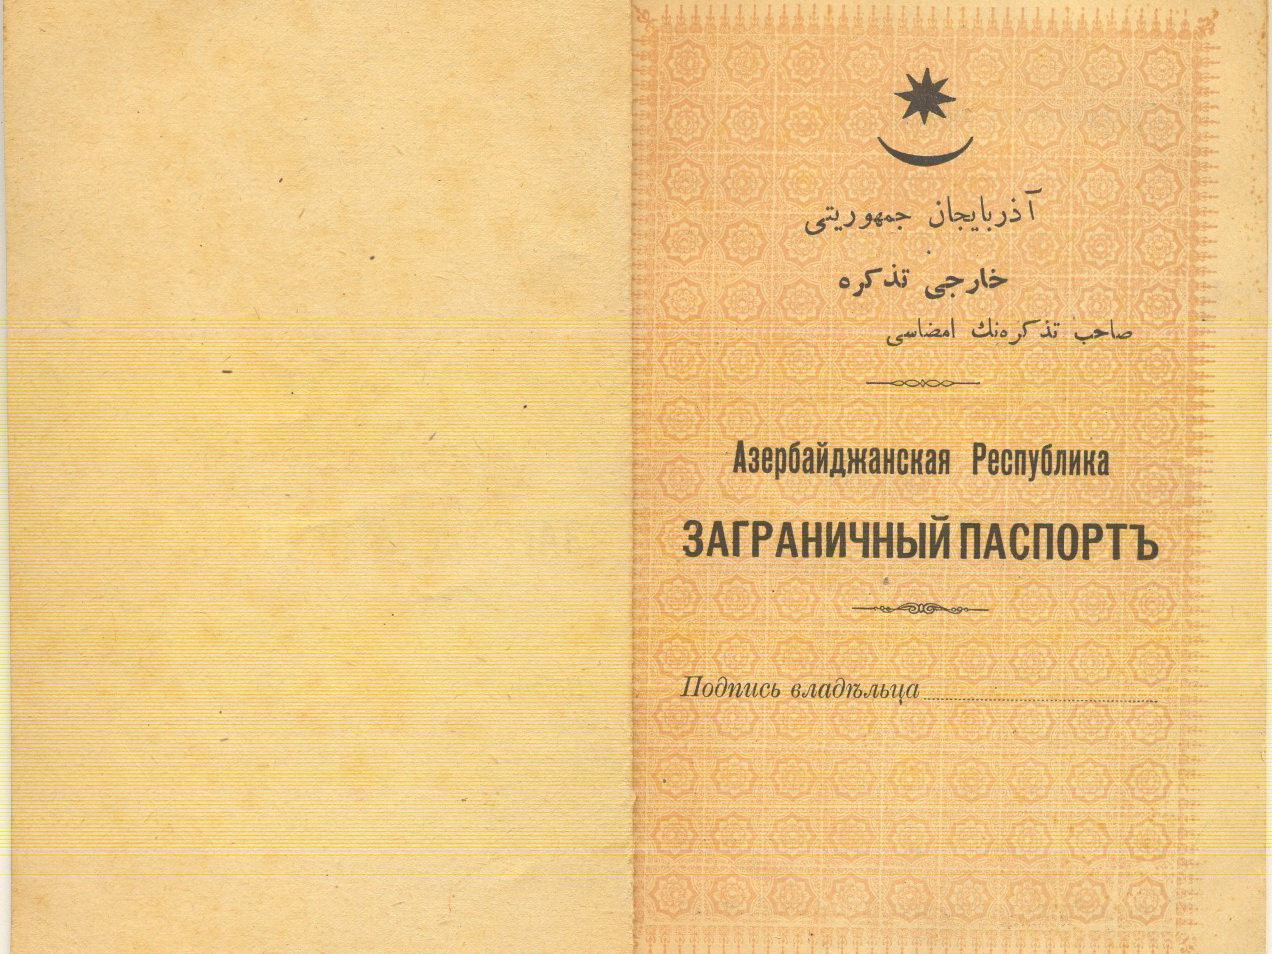 История заграничного паспорта гражданина Азербайджанской Республики - ФОТО